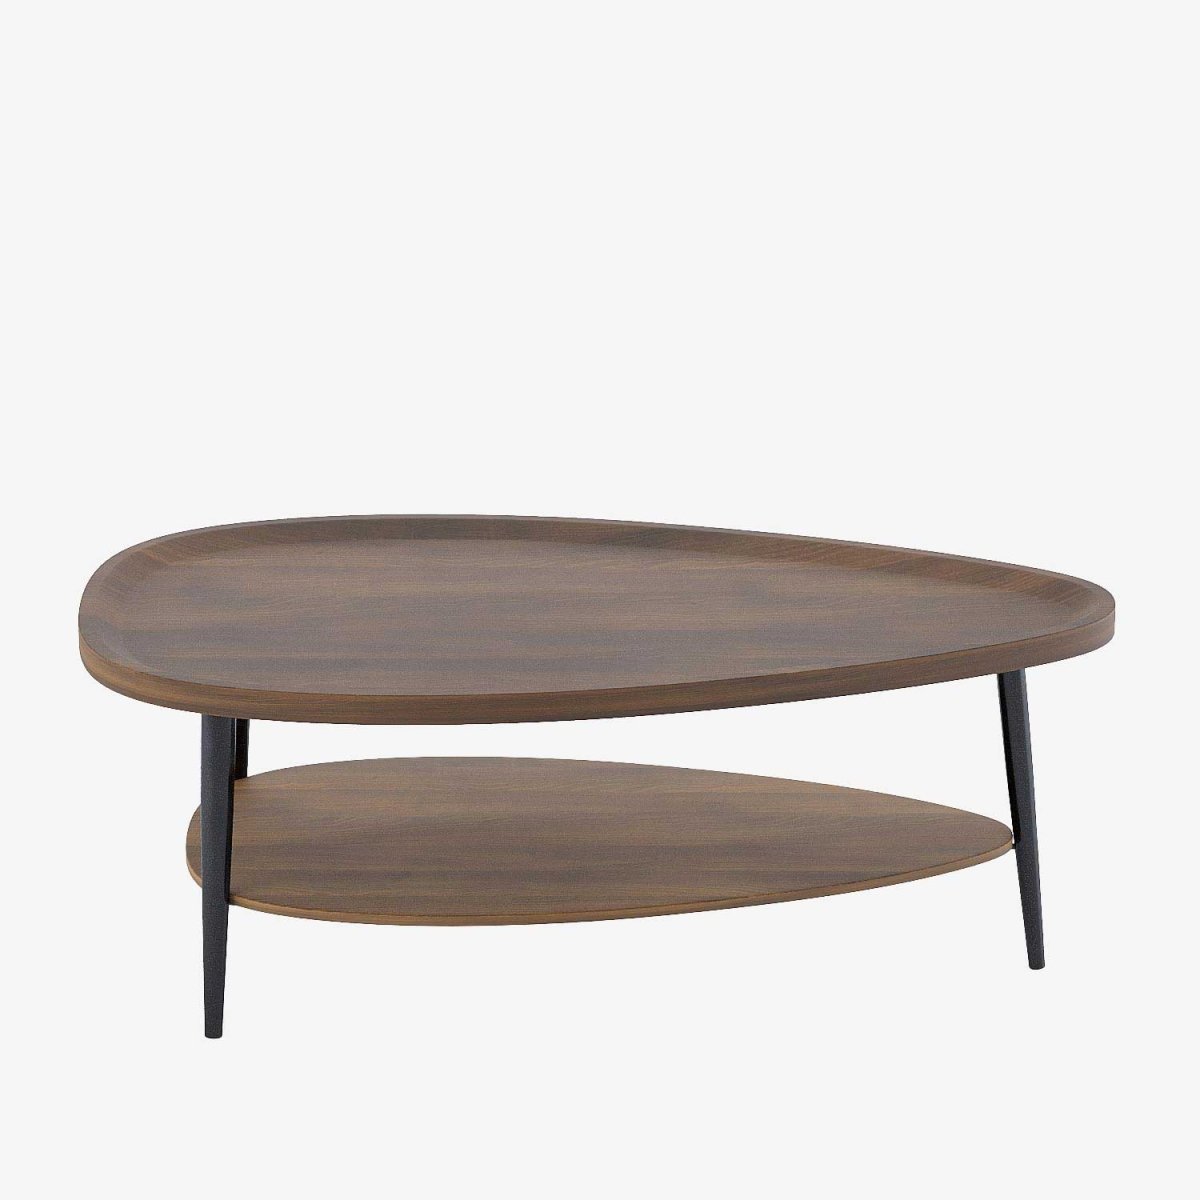 Table basse bois vintage, 2 plateaux en forme de triangle, style déco sixties - Potiron Paris, meuble decoration d'autrefois